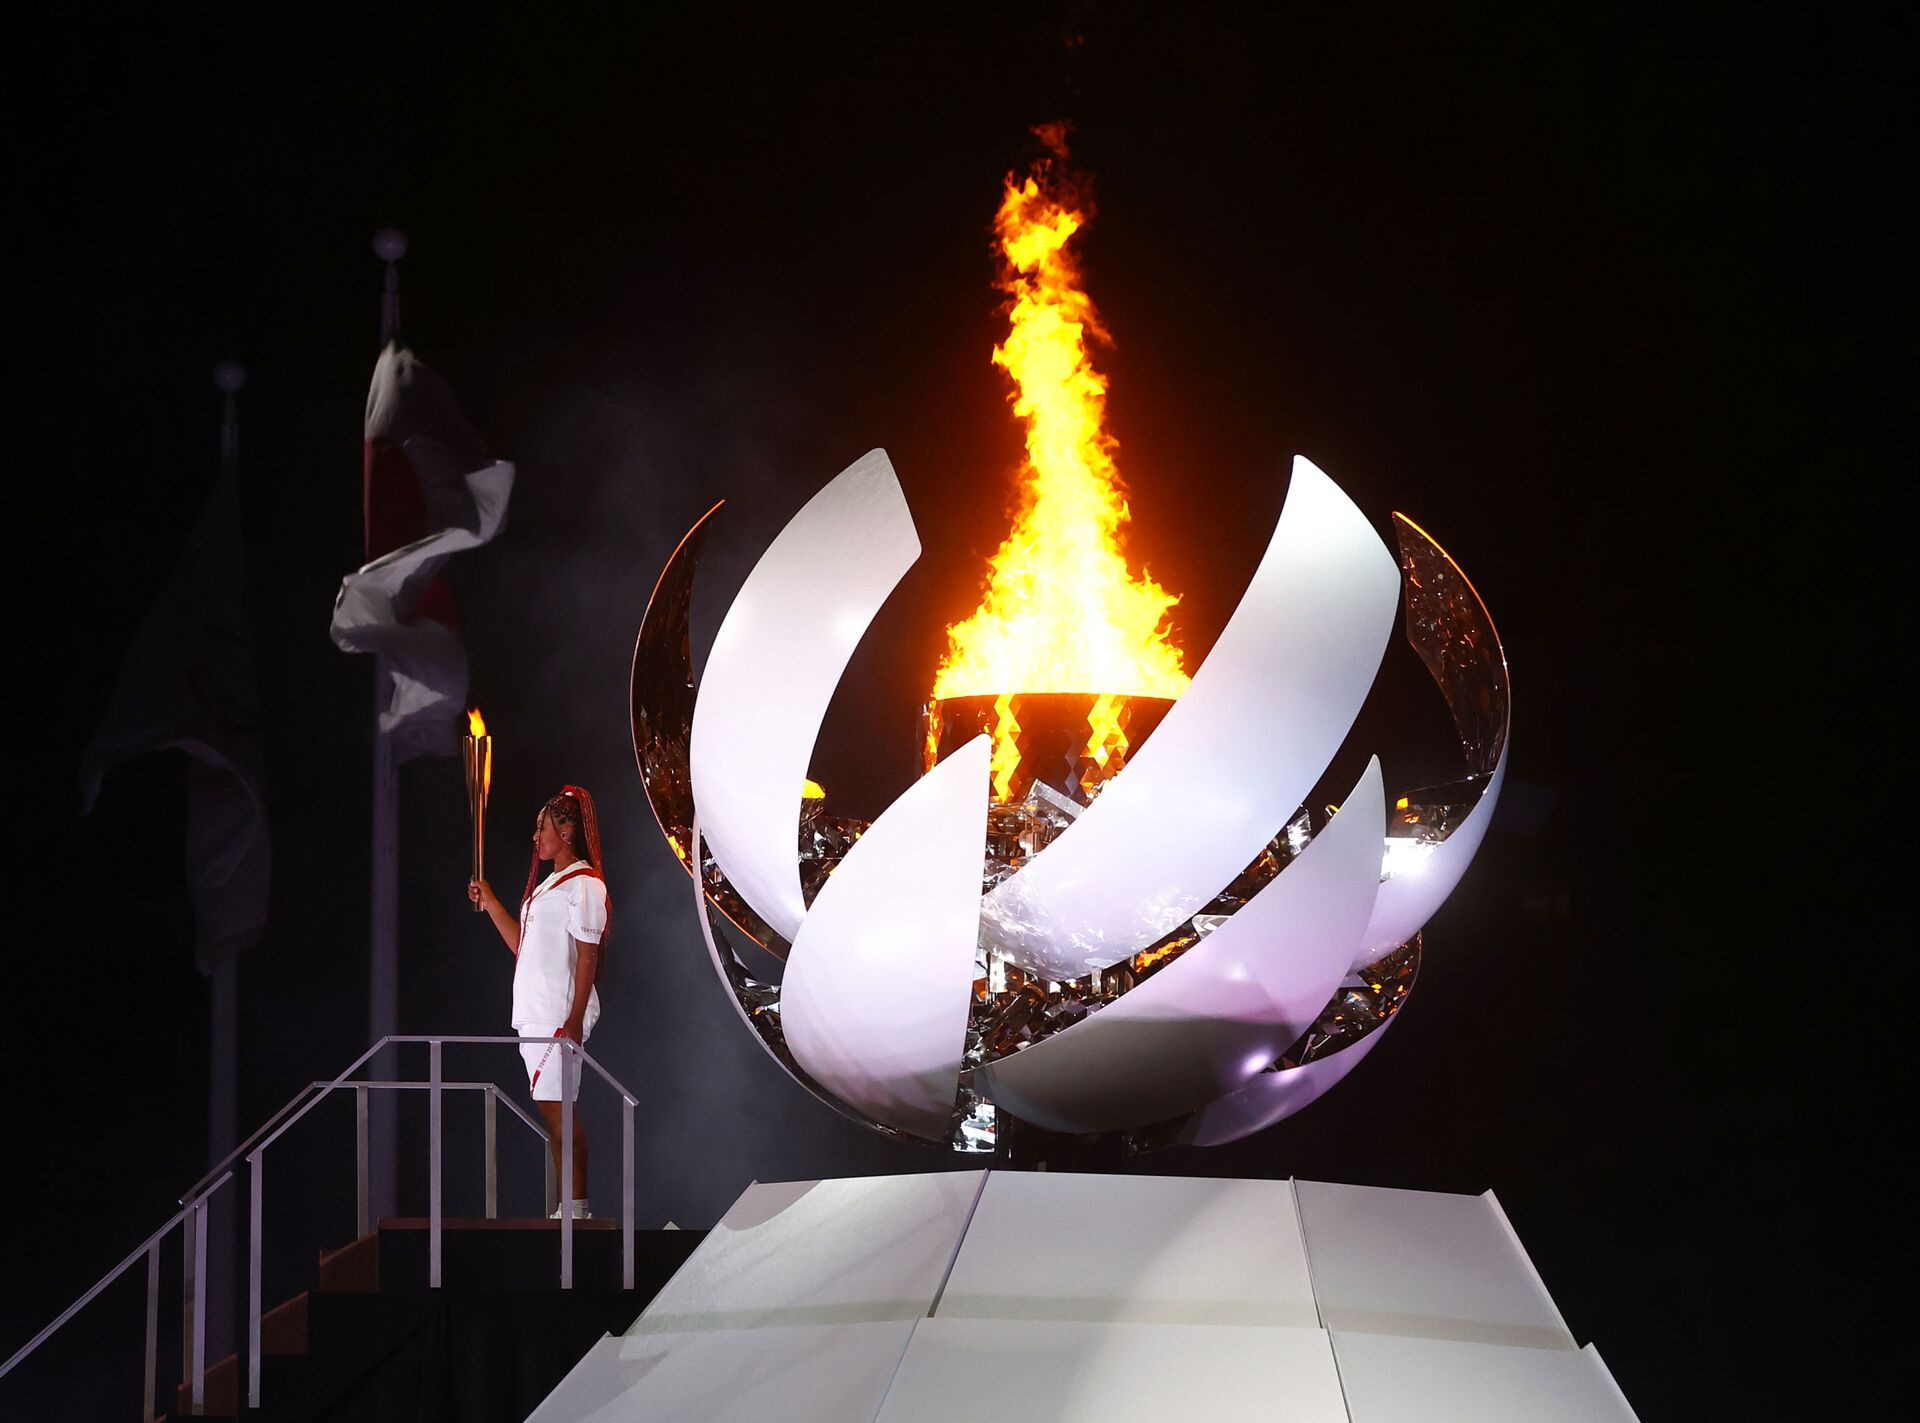 Наоми Осака из Японии держит олимпийский факел после зажжения олимпийского котла на церемонии открытия  - Sputnik Беларусь, 1920, 08.08.2021